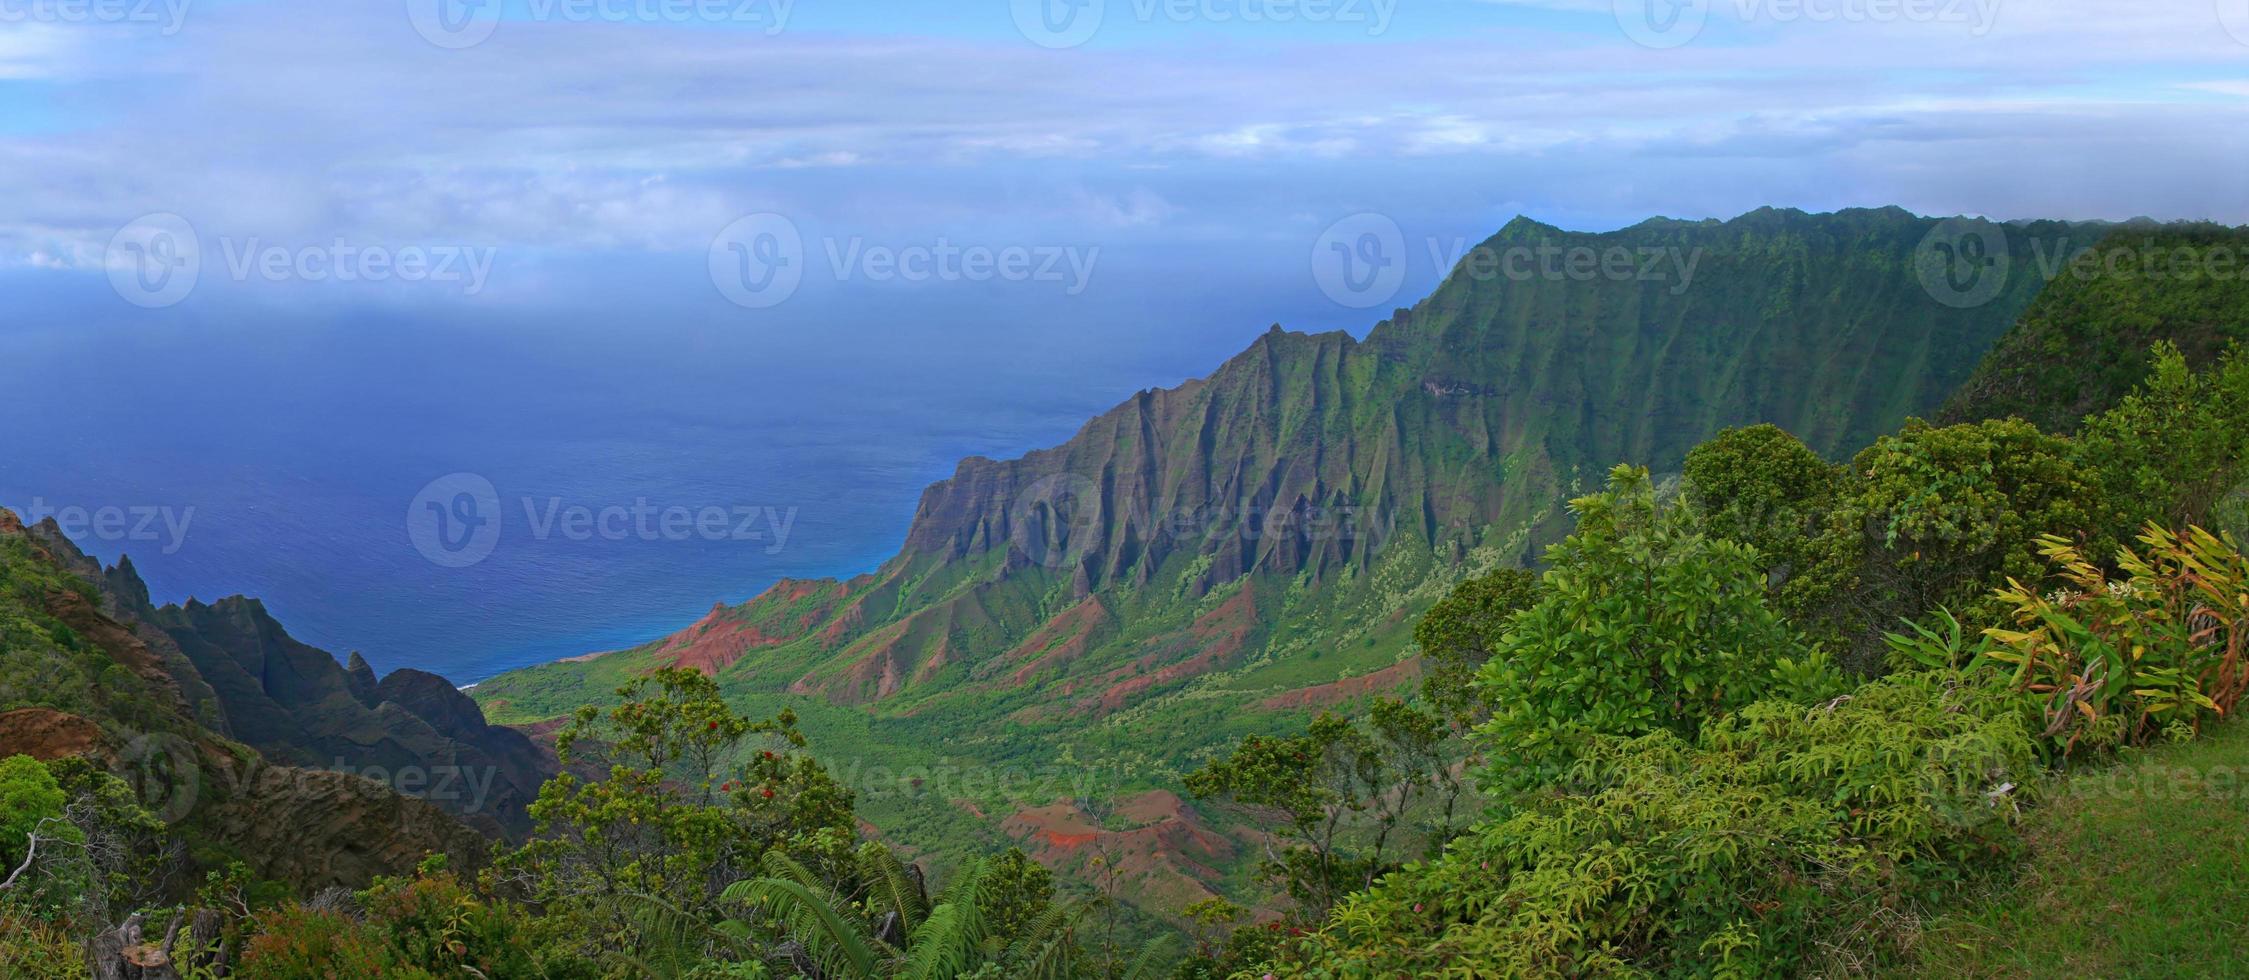 Mountains of Kauai Hawaii photo